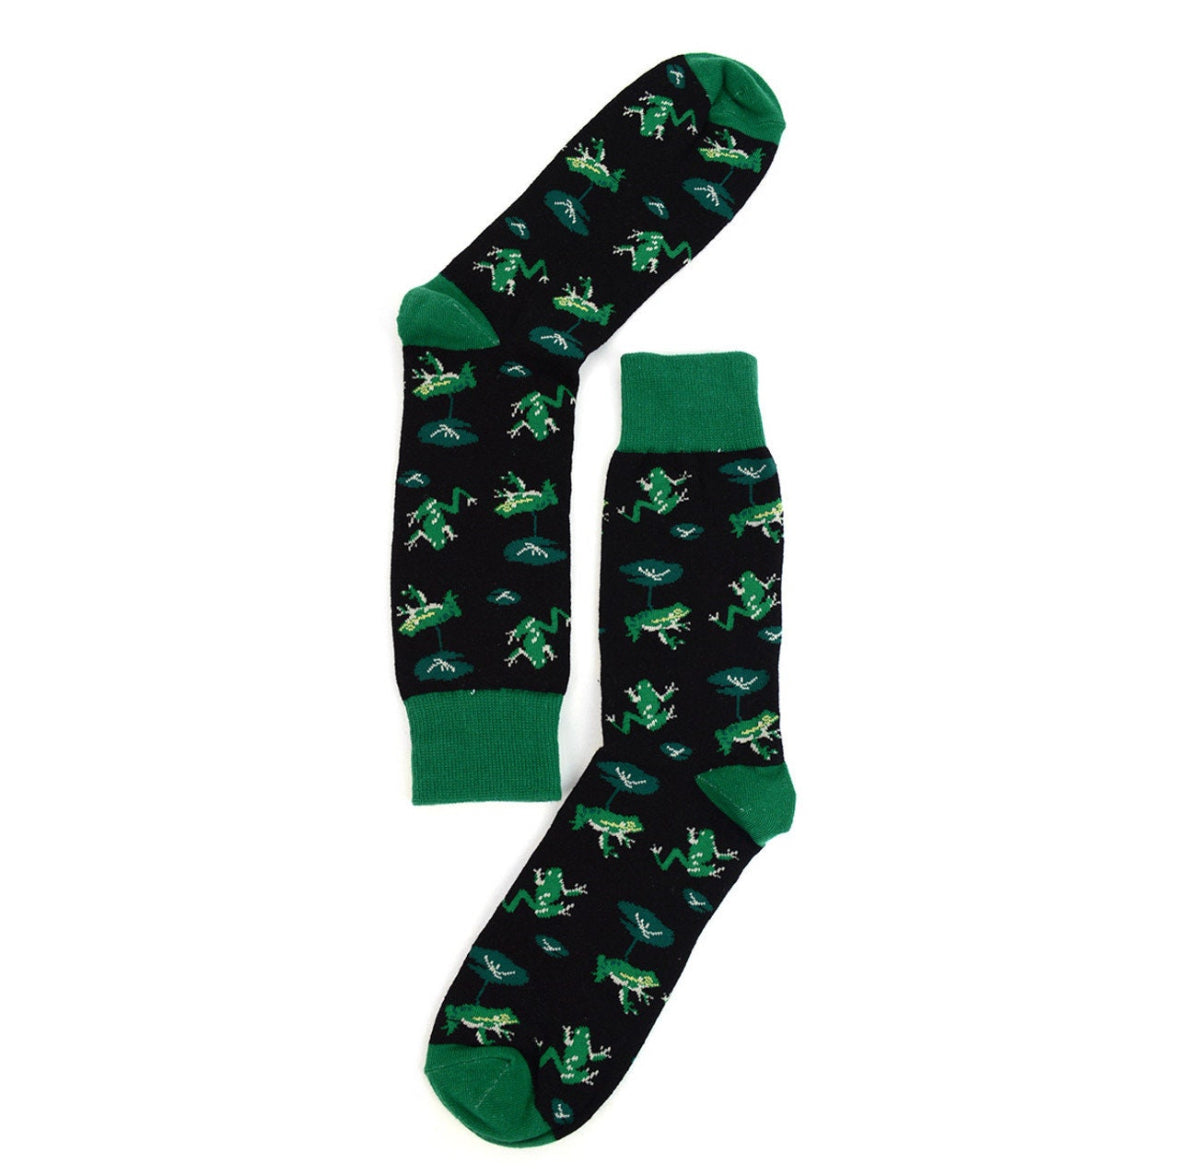 Men's Green Frog Novelty Sock Funny Socks Prince Charming Lover Gifts Cool Socks Funny Groomsmen Socks